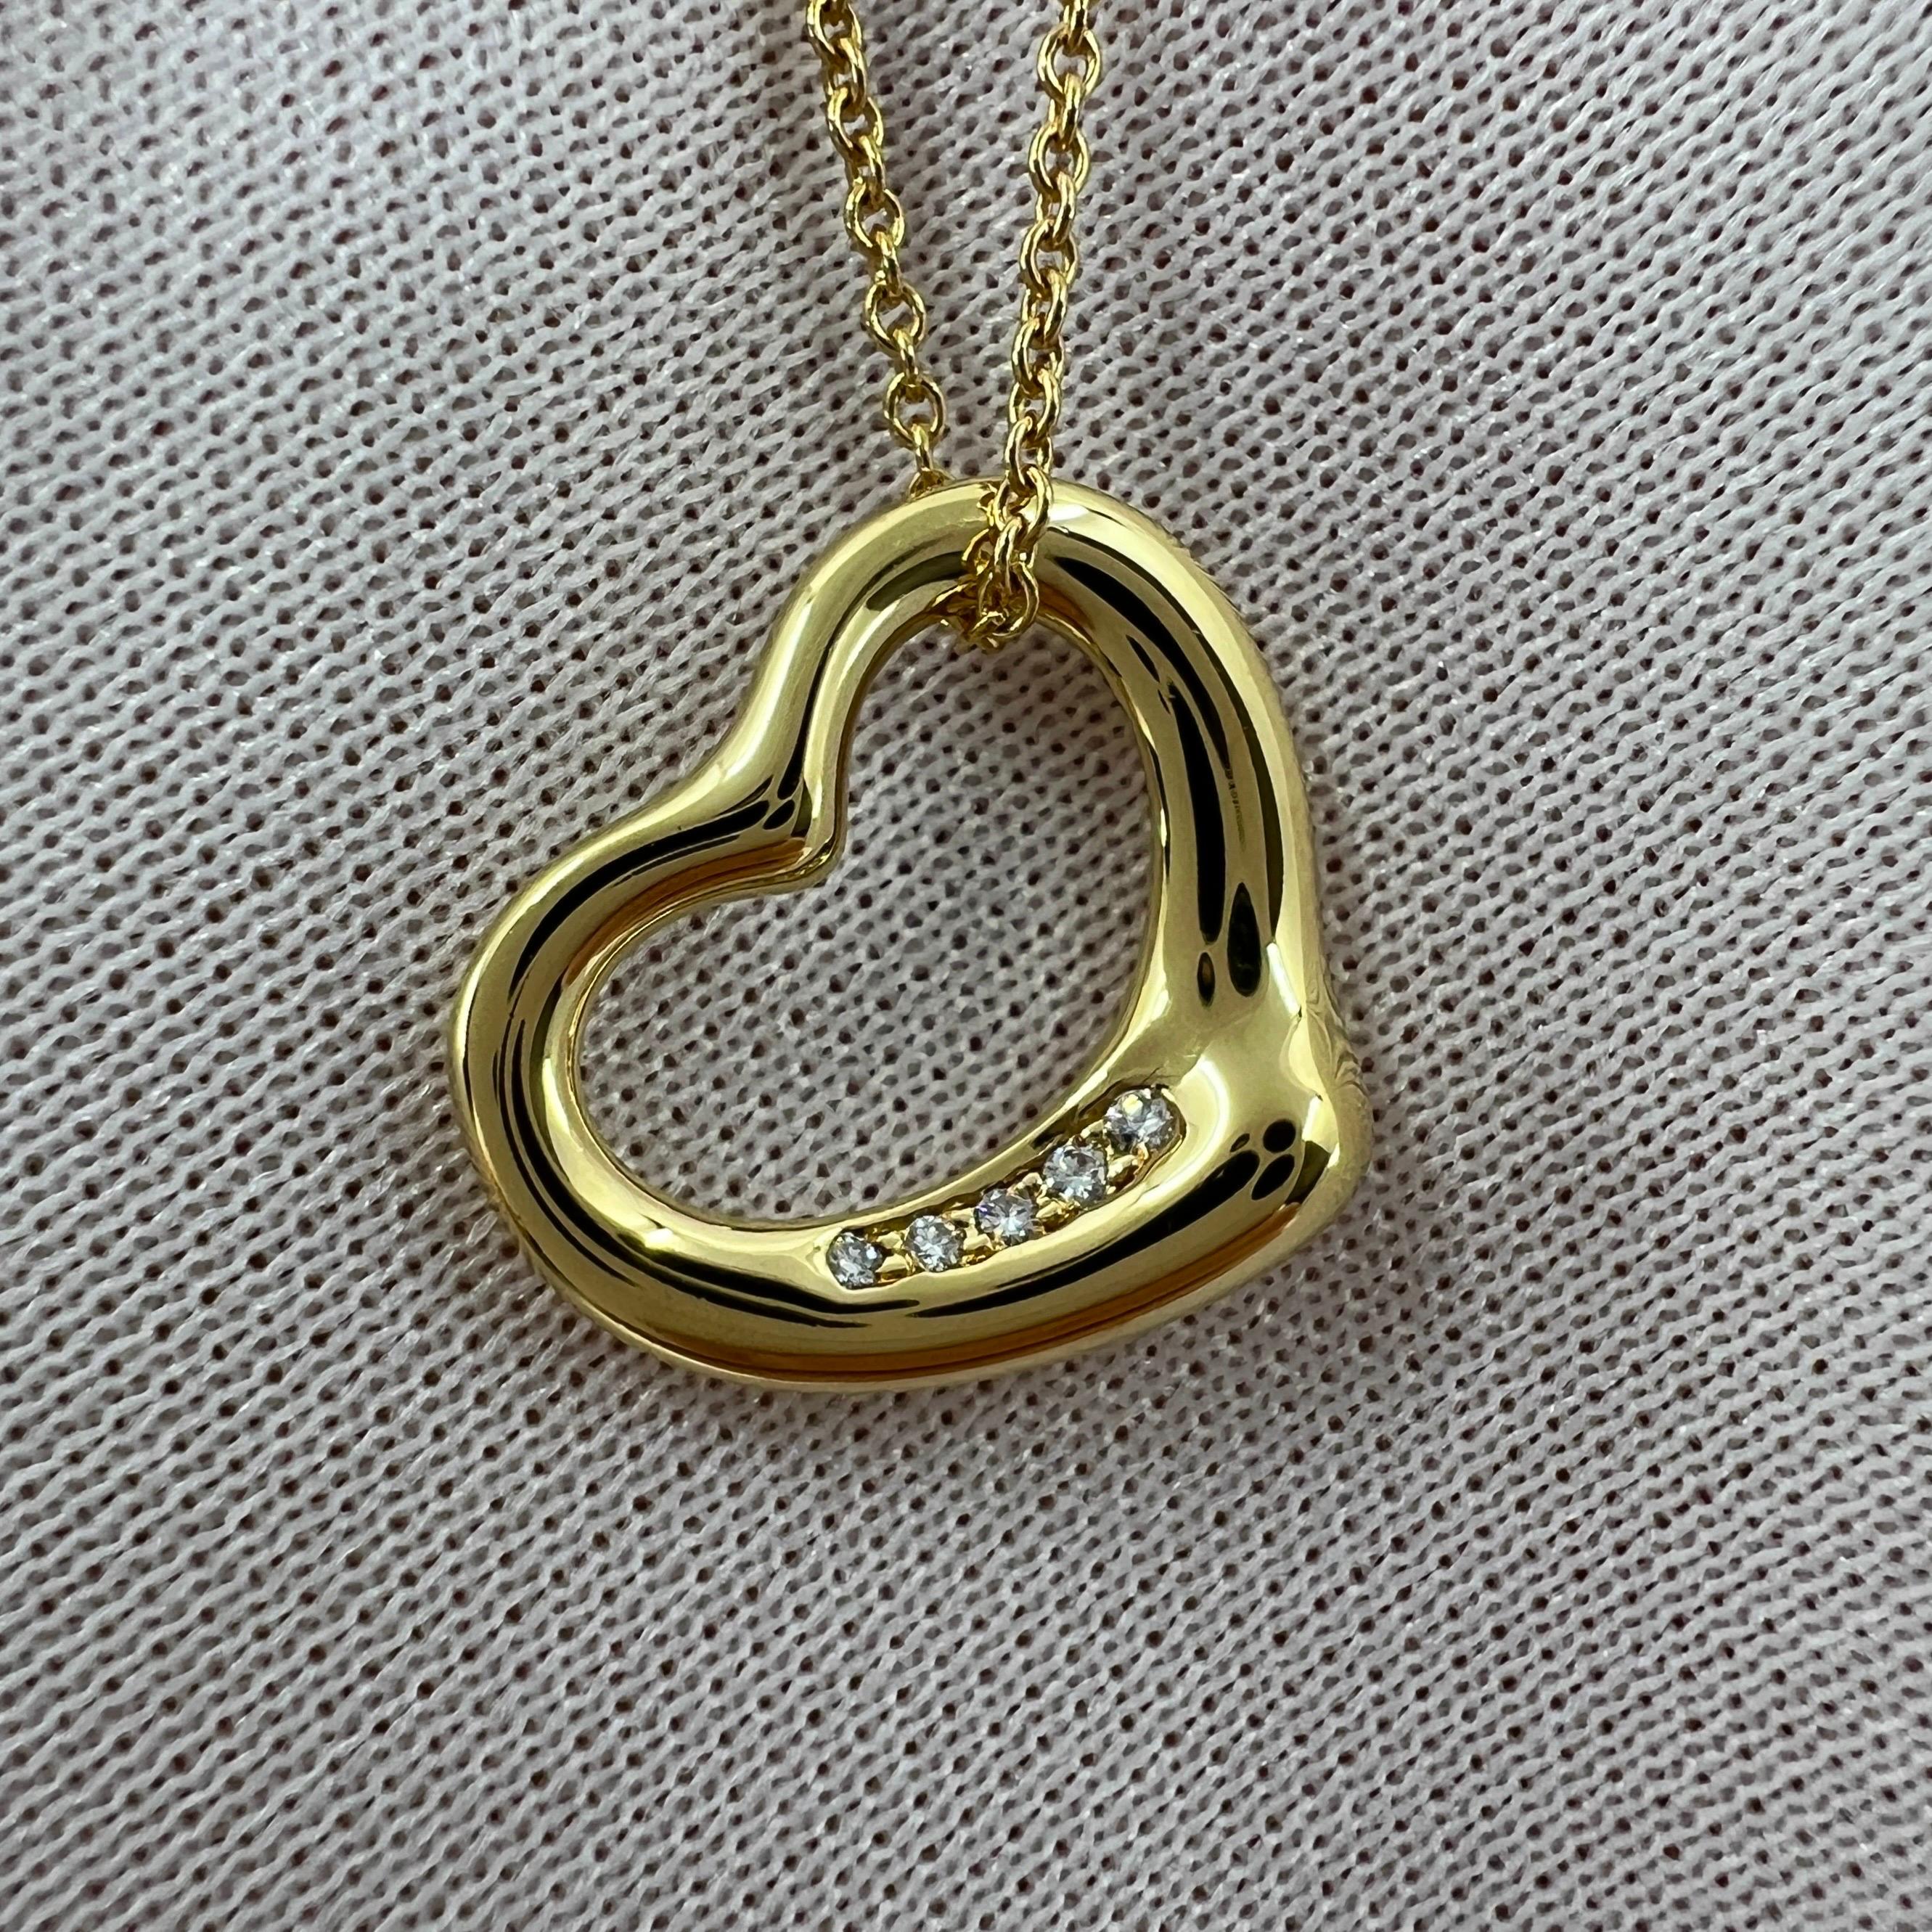 Tiffany & Co. Elsa Peretti Open Heart Diamond 18k Yellow Gold Pendant Necklace For Sale 2